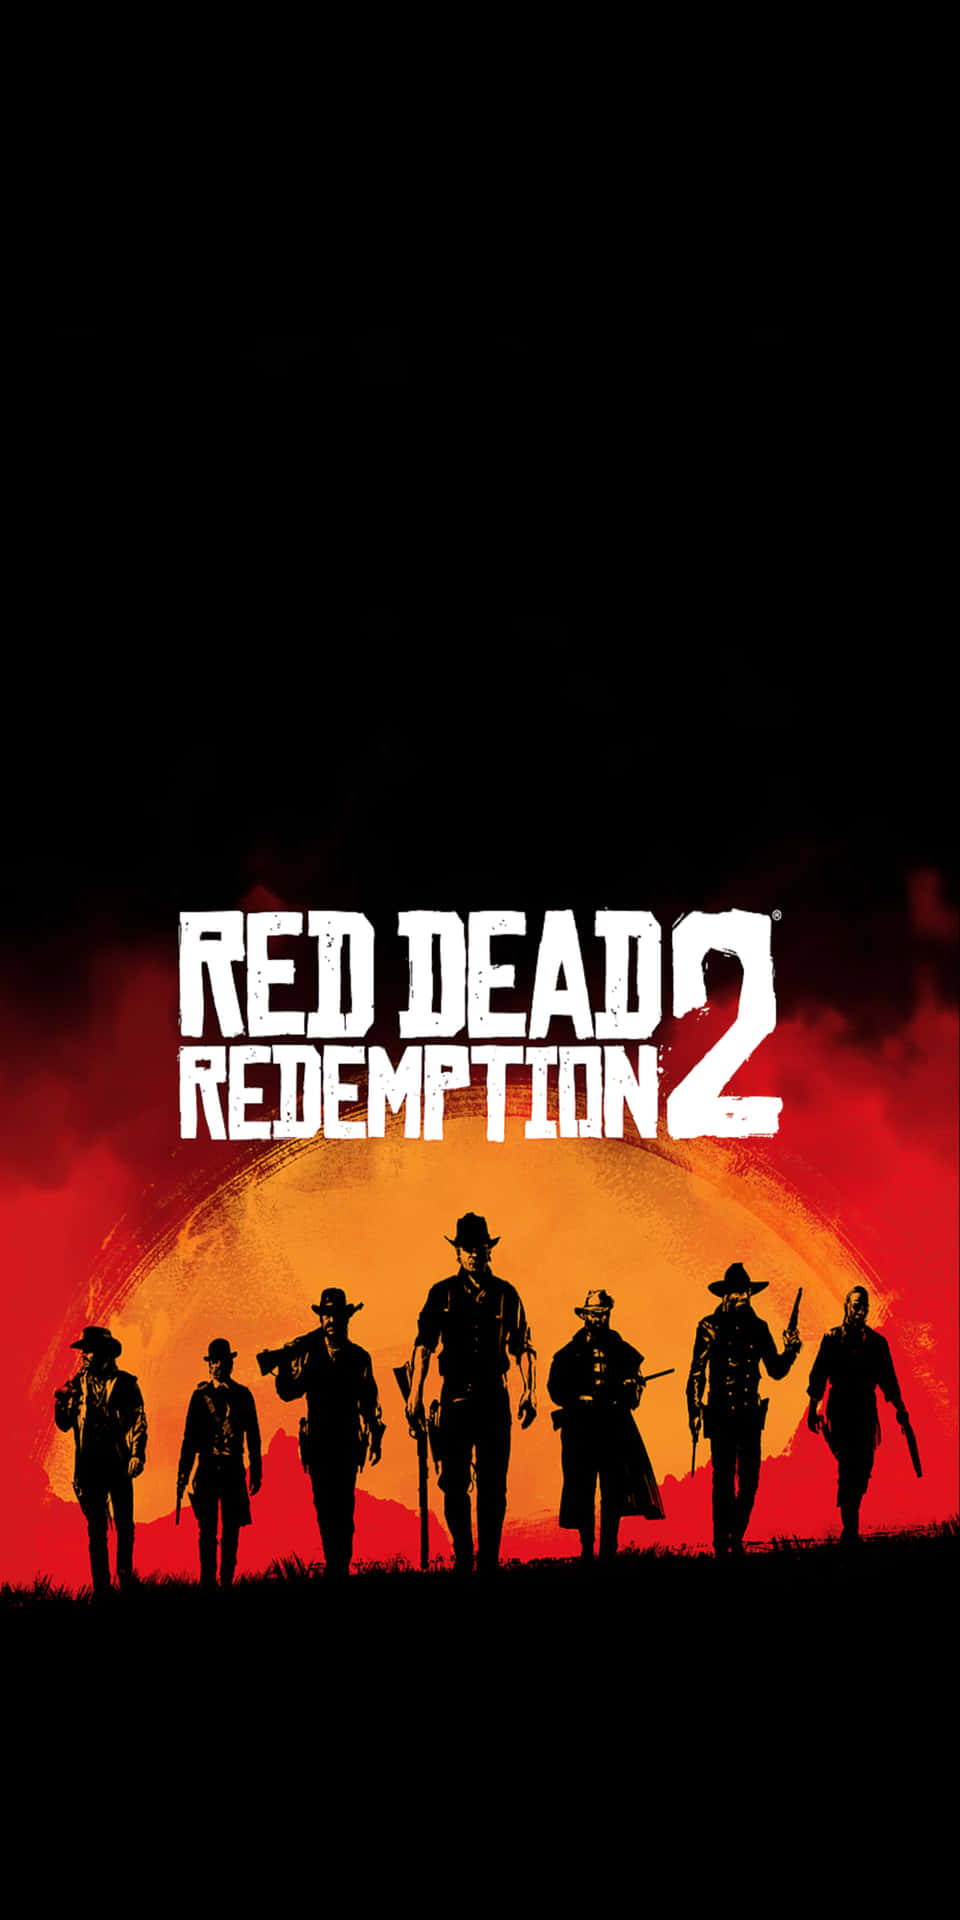 Pixel3 Röd Död Redemption 2 Bakgrundssilhuetter Av Cowboys Affisch.